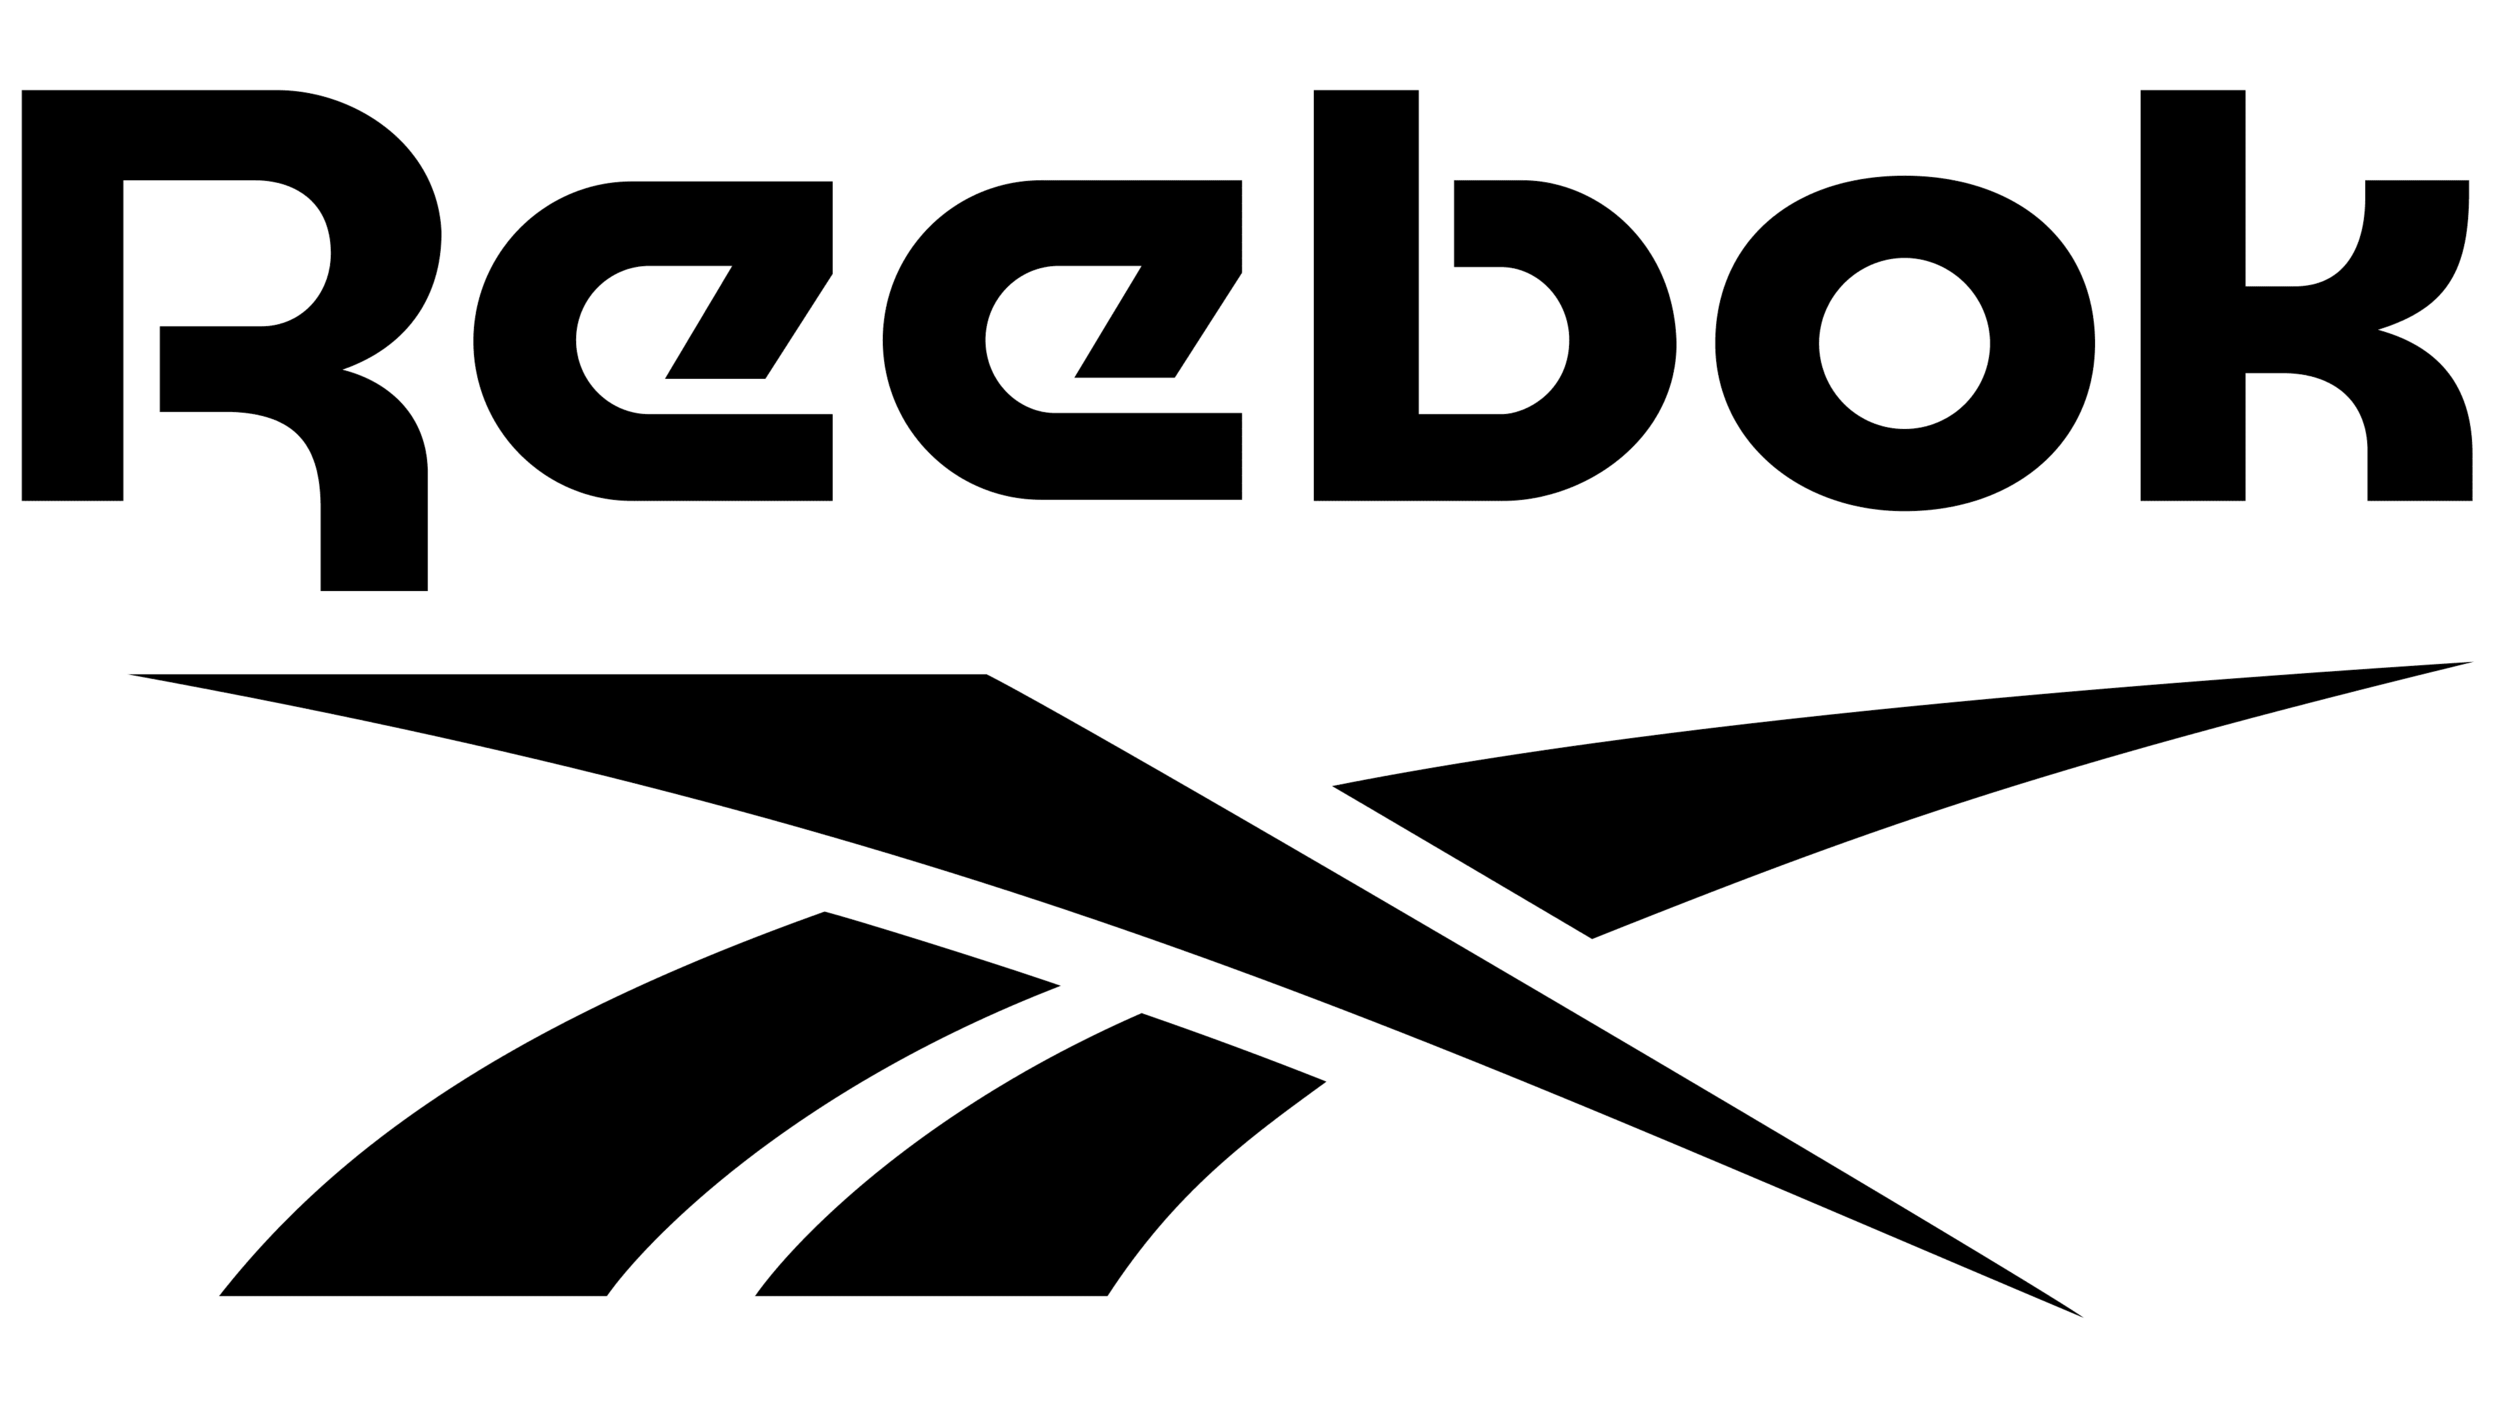 Reebok-logo.png